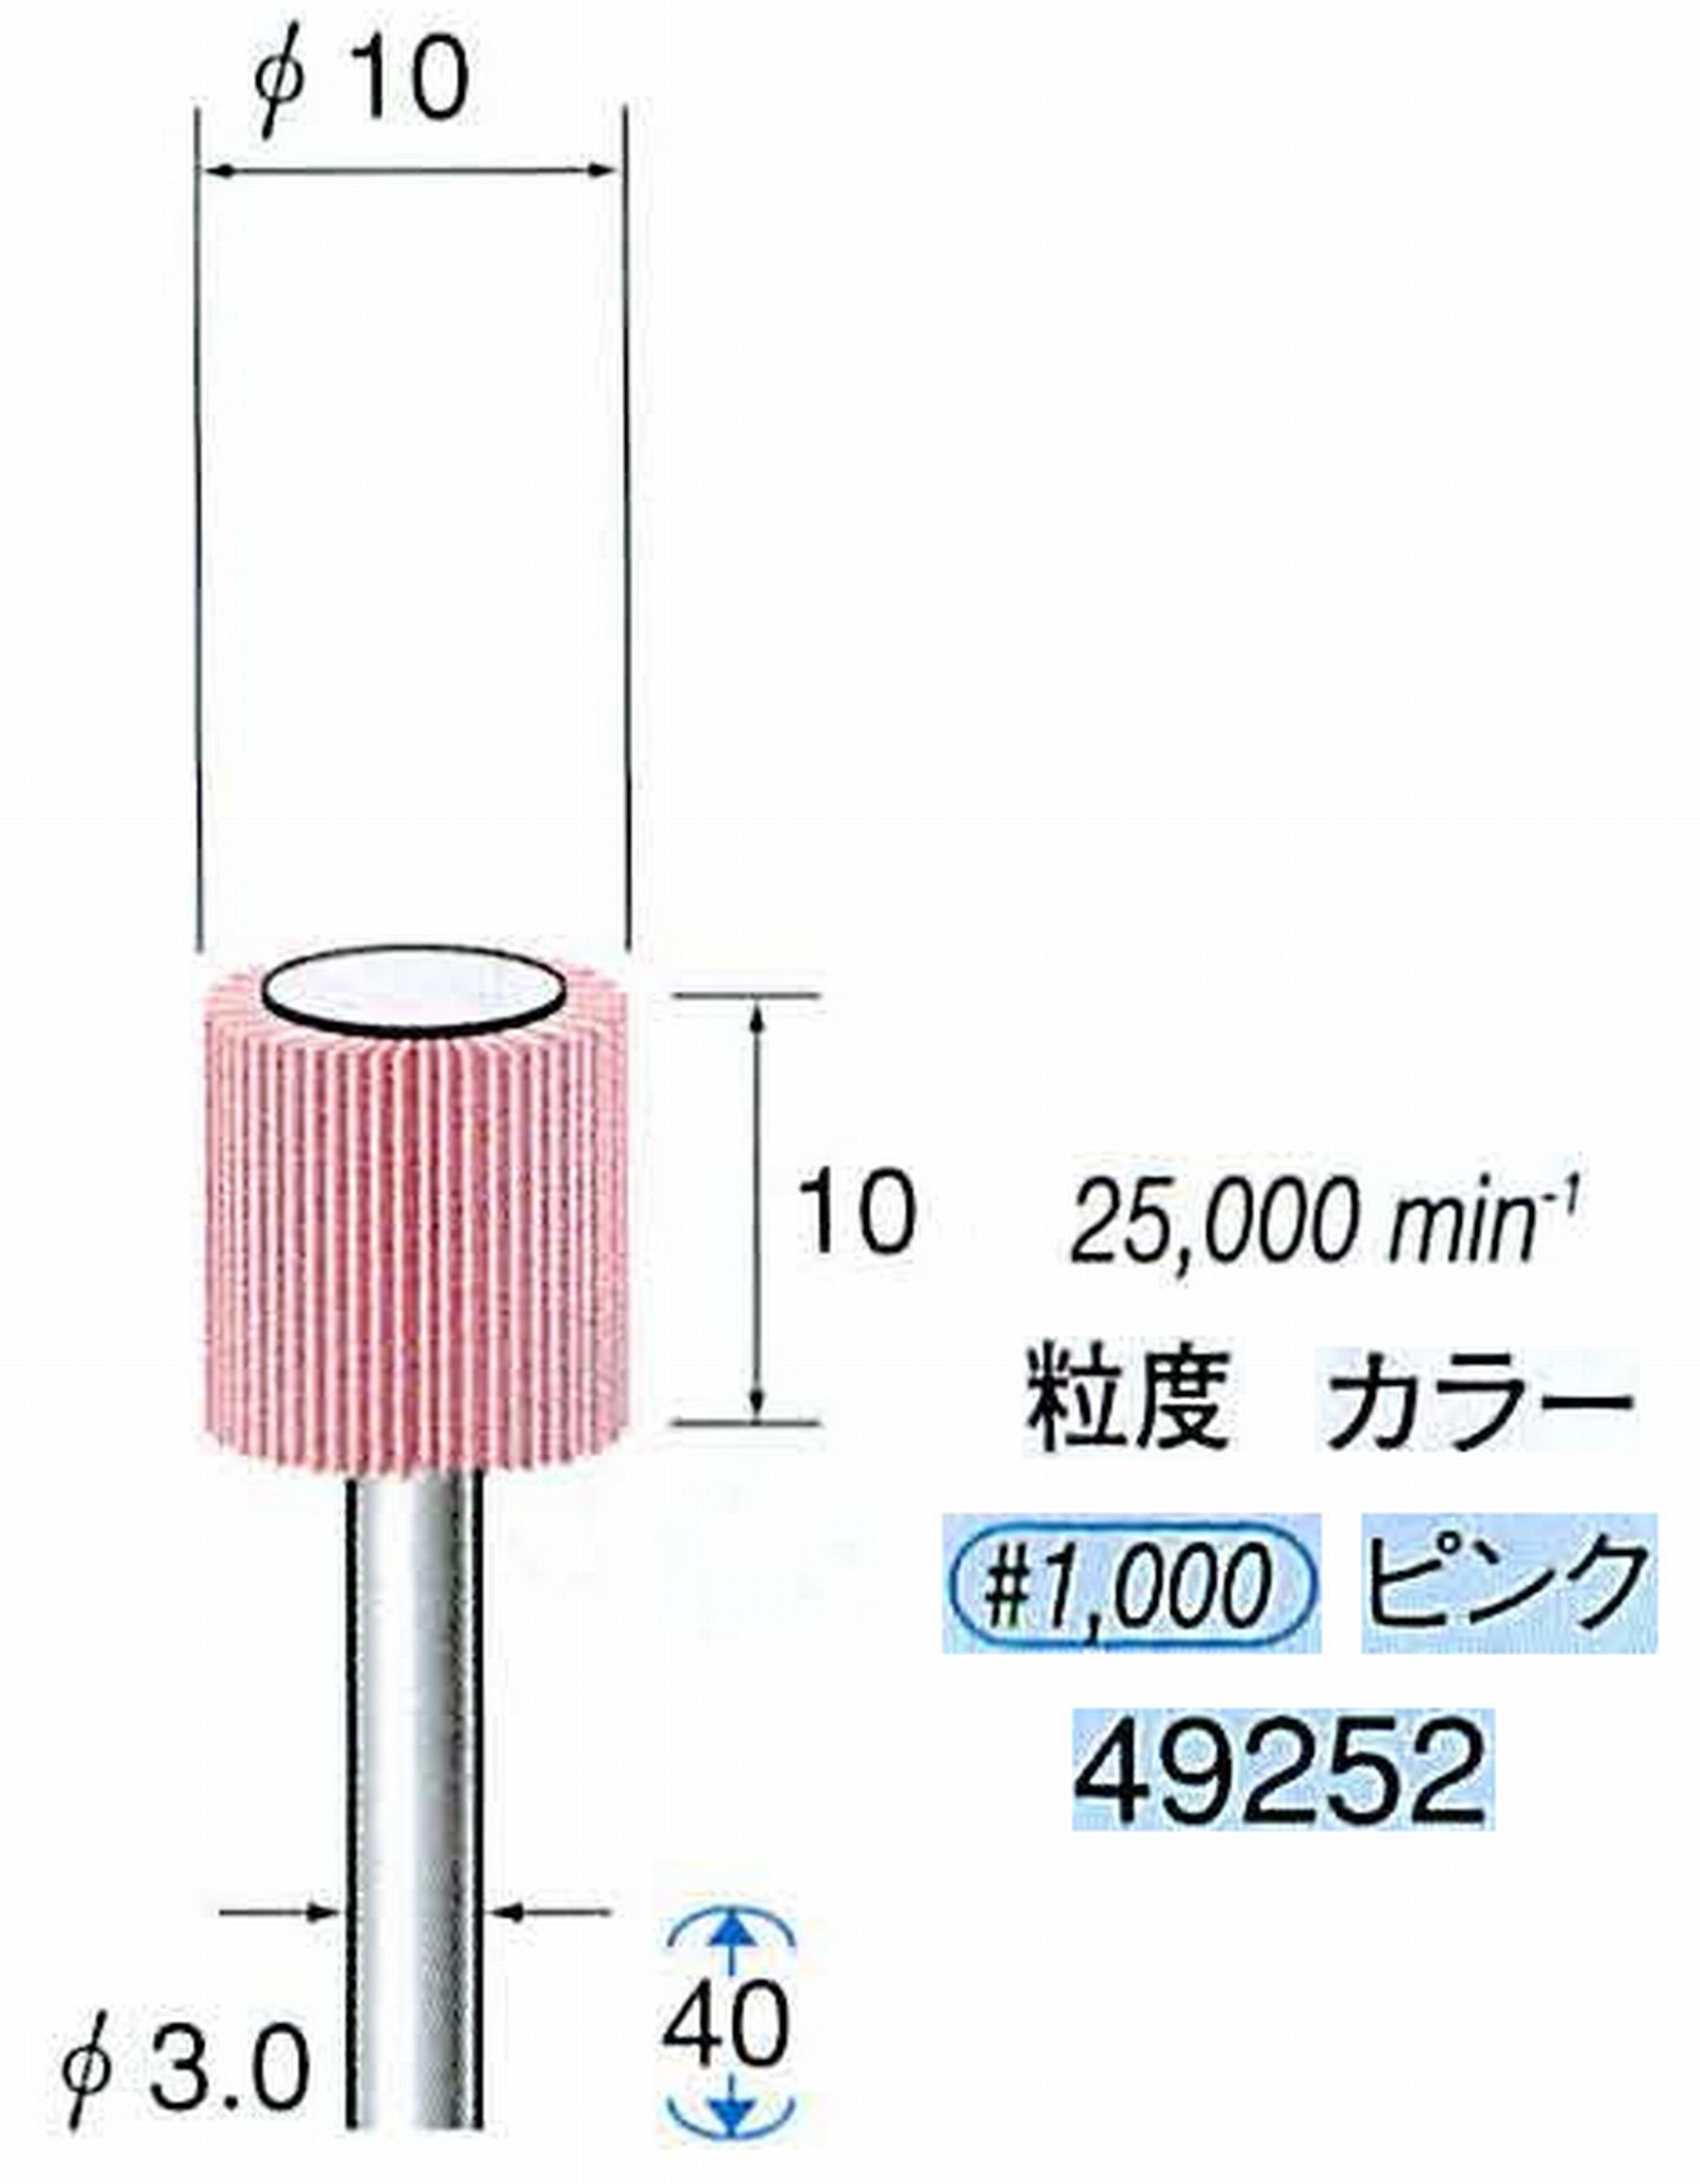 ナカニシ/NAKANISHI ファイン フラップサンダー 軸径(シャンク)φ3.0mm 49252